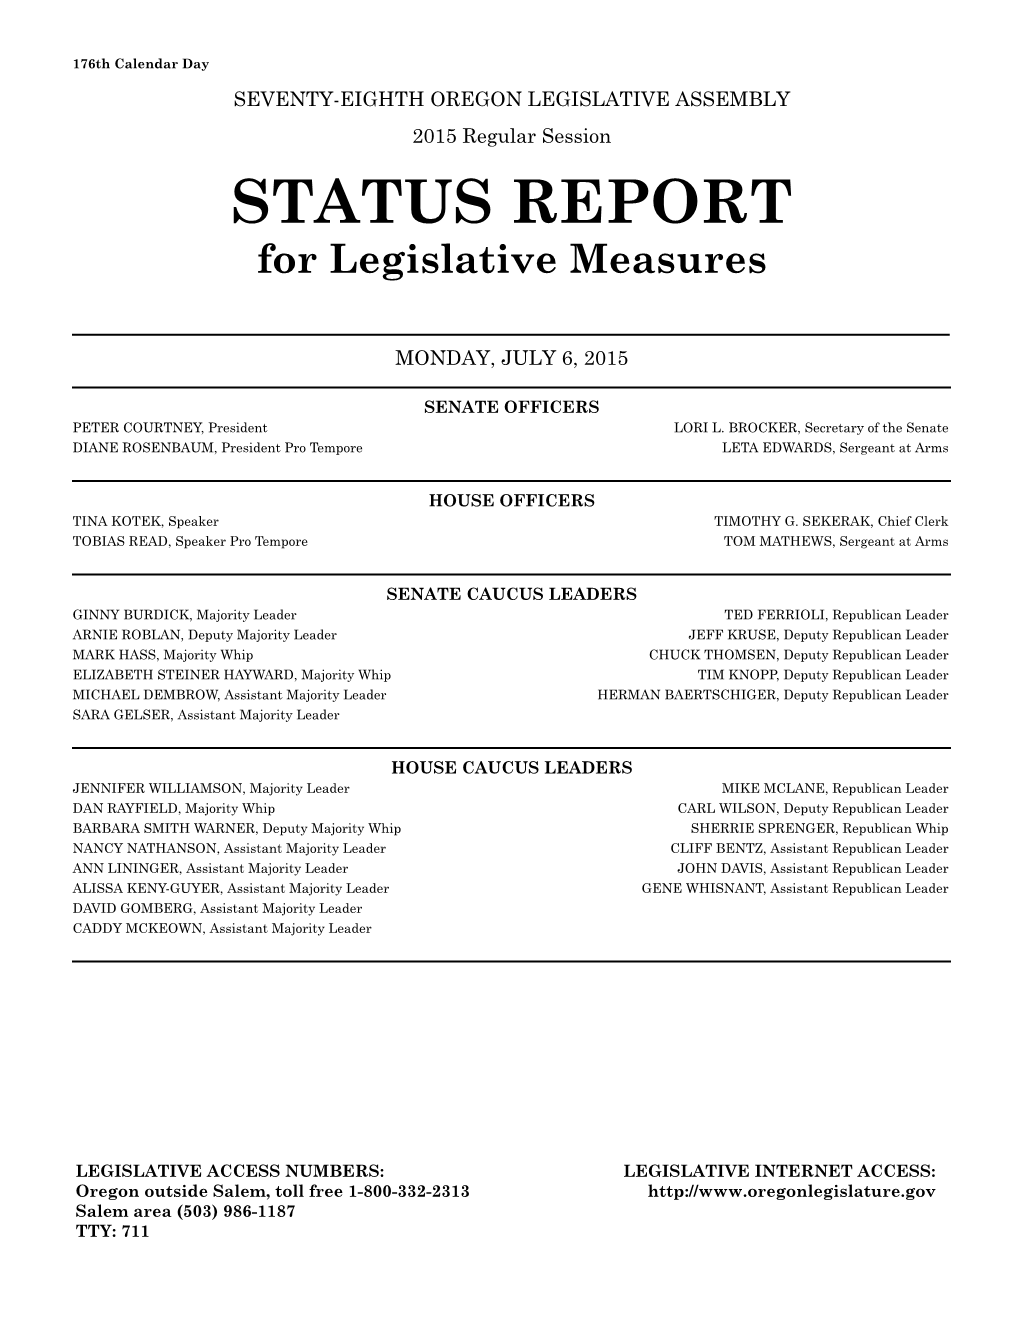 STATUS REPORT for Legislative Measures